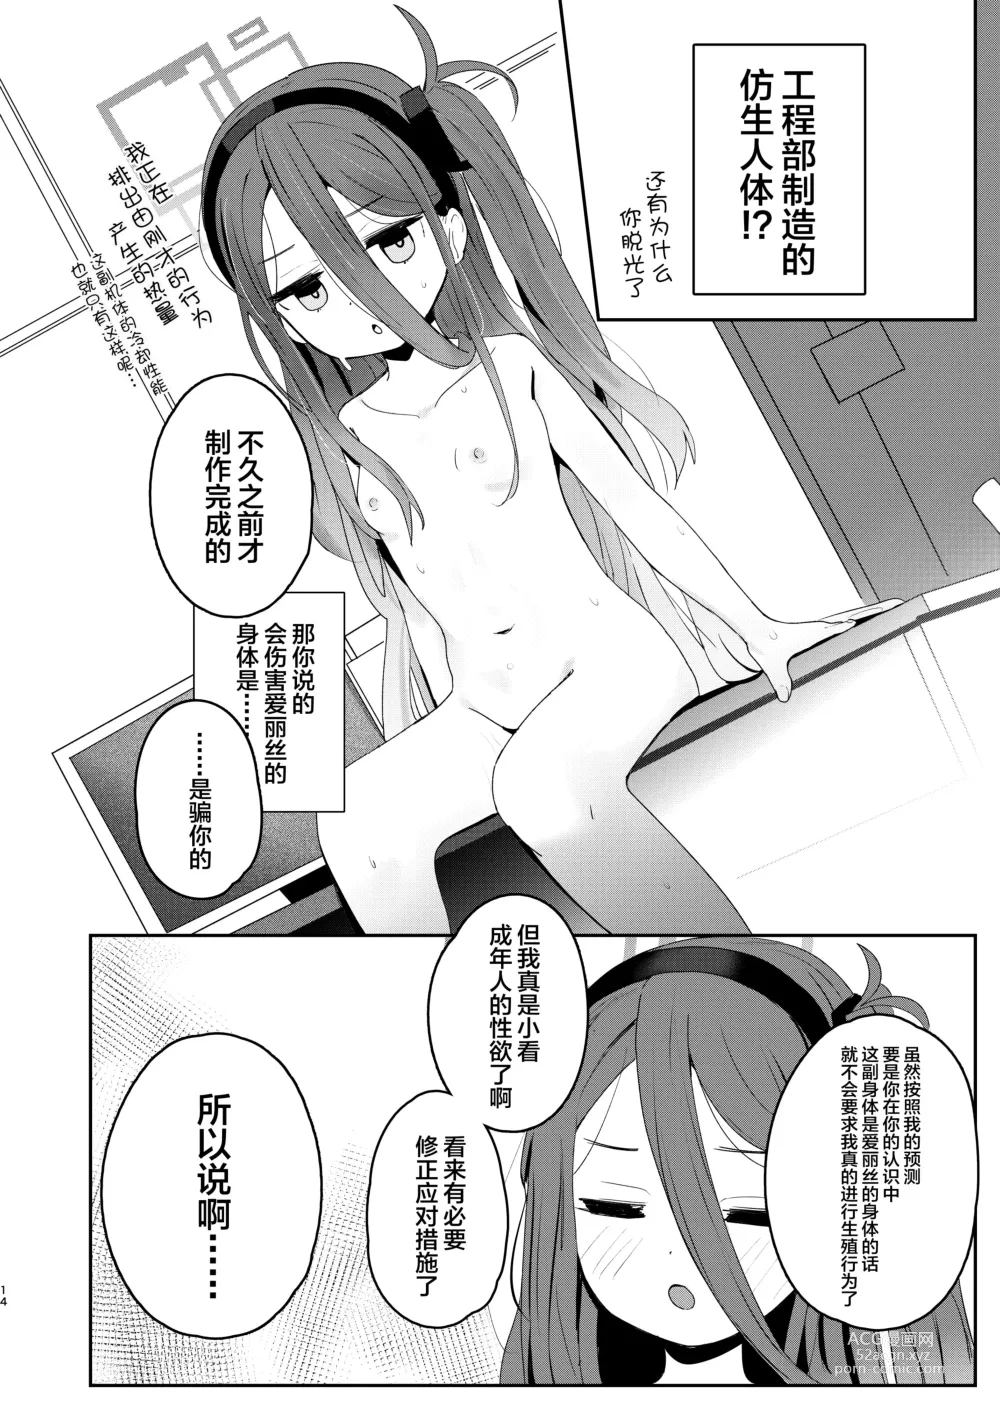 Page 13 of doujinshi 今天的值日生→Kei